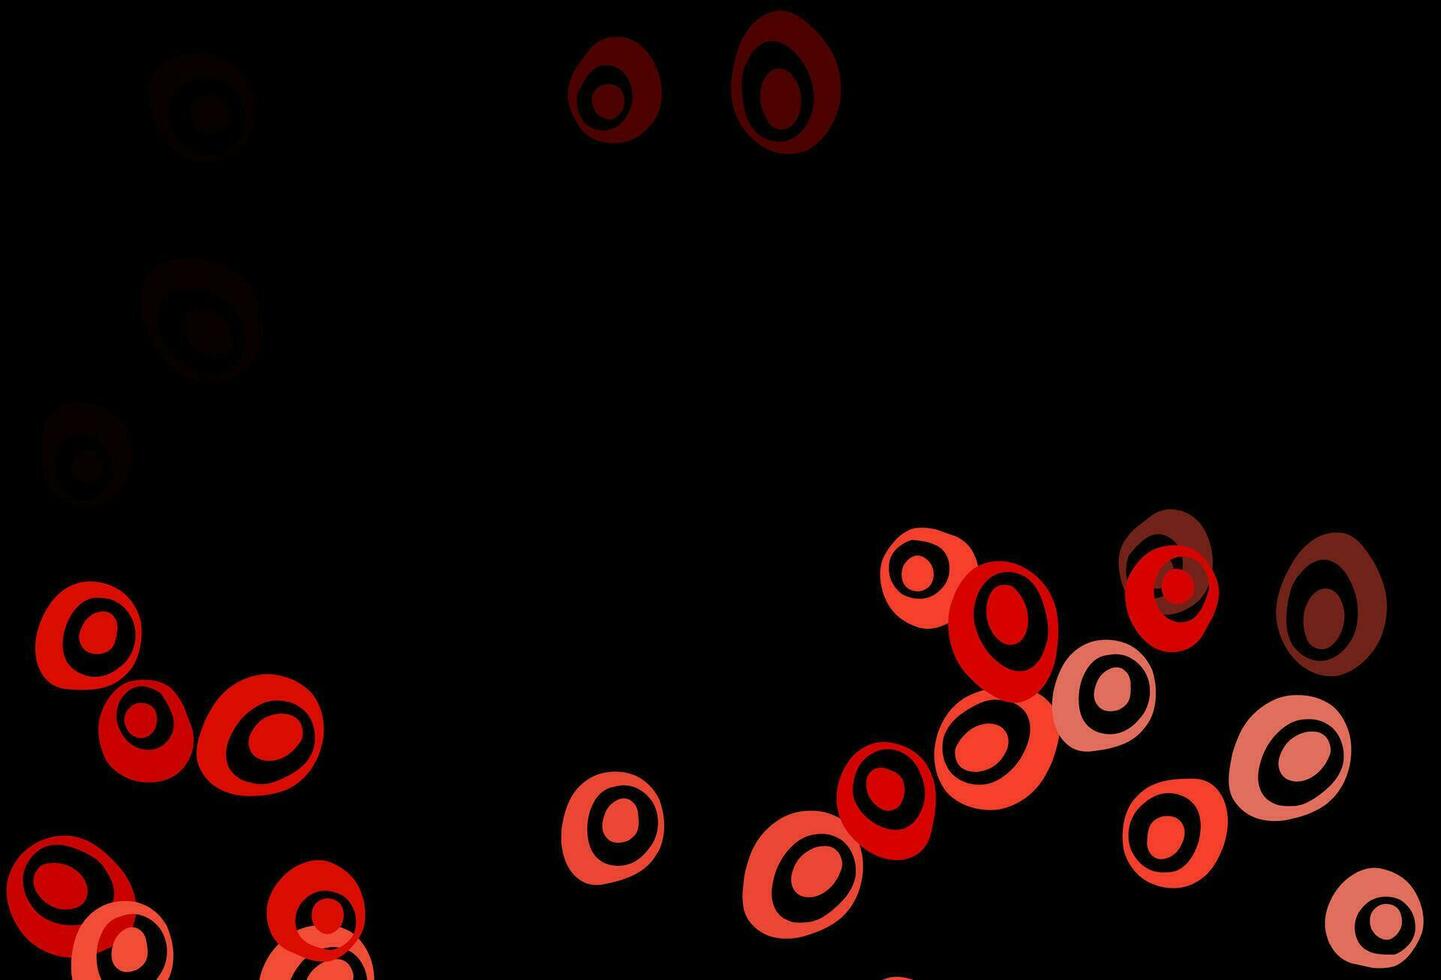 diseño de vector rojo oscuro con formas circulares.